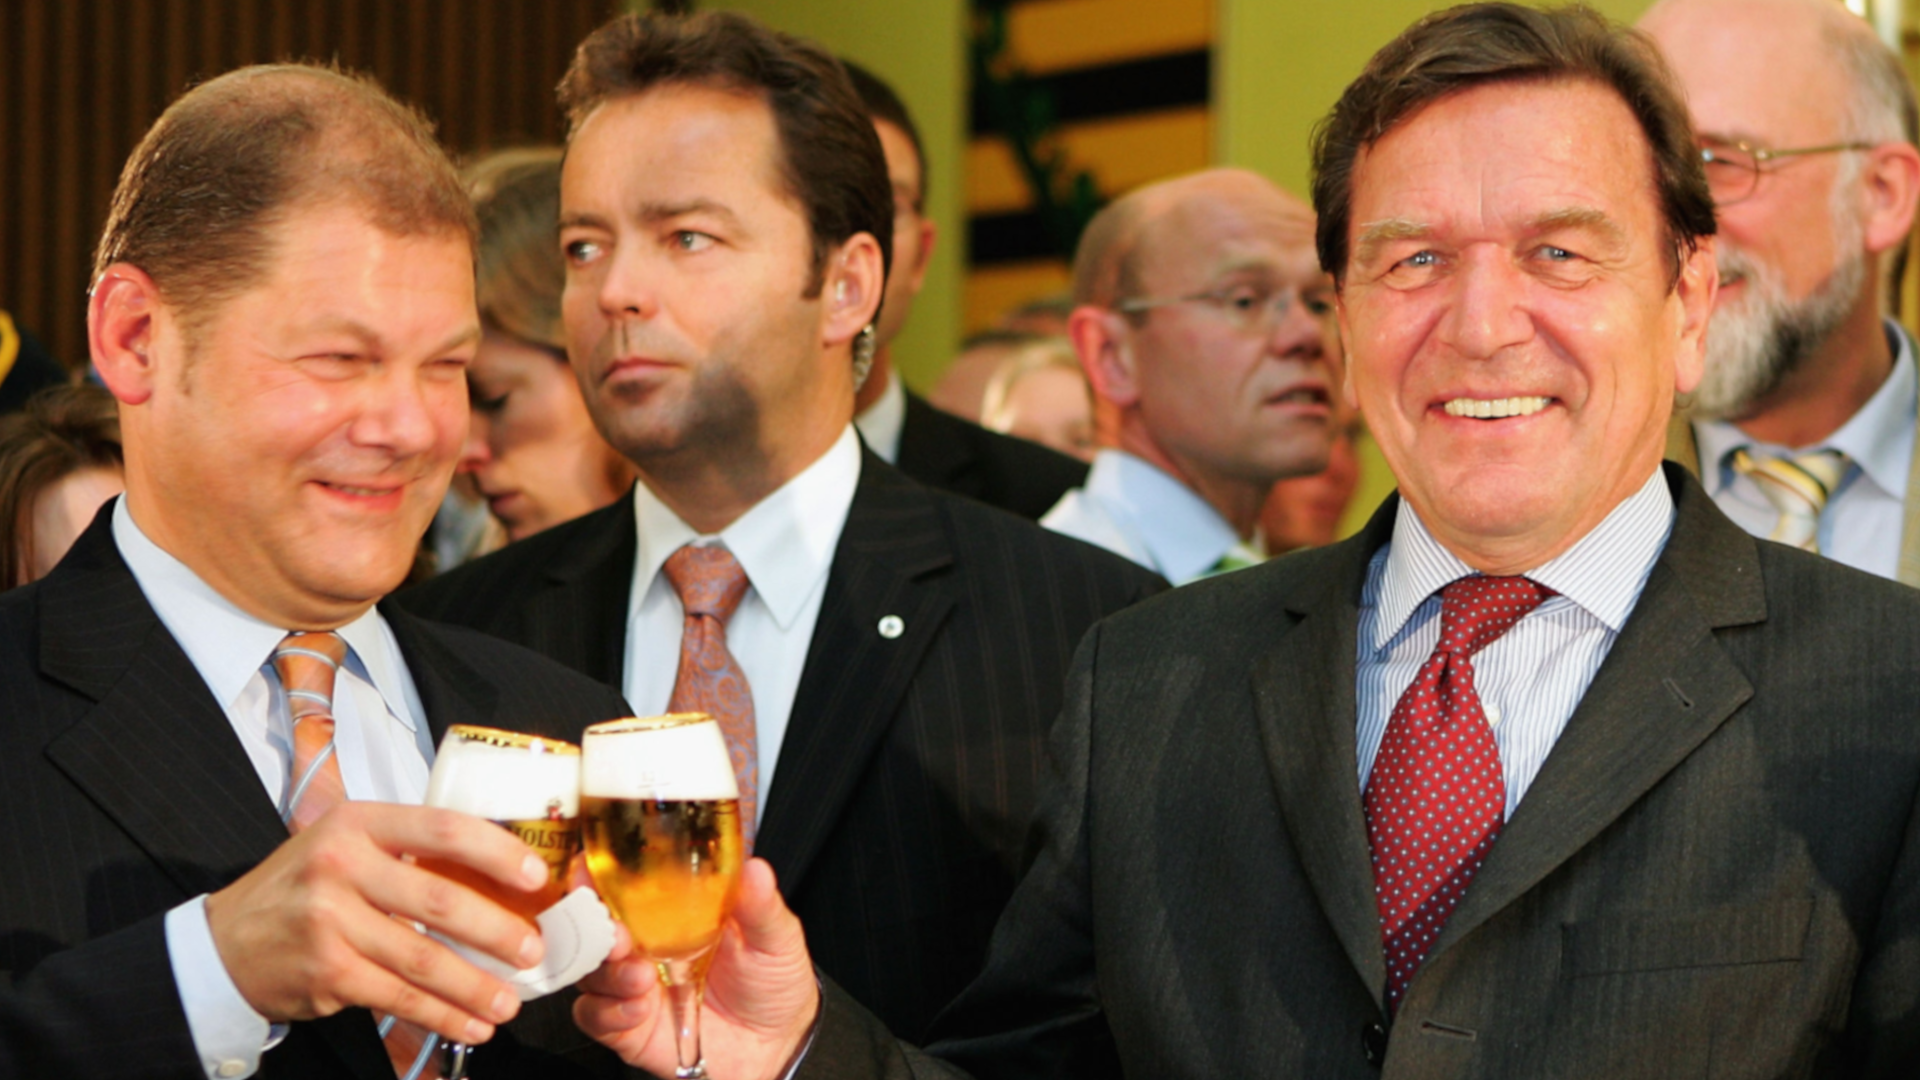 
                <strong>Gerhard Schröder ist Bundeskanzler</strong><br>
                Der Bundeskanzler damals hieß Gerhard Schröder. Der neue Regierungschef Olaf Scholz war zu dieser Zeit noch Vorsitzender des SPD-Kreisverbands Hamburg-Altona.
              